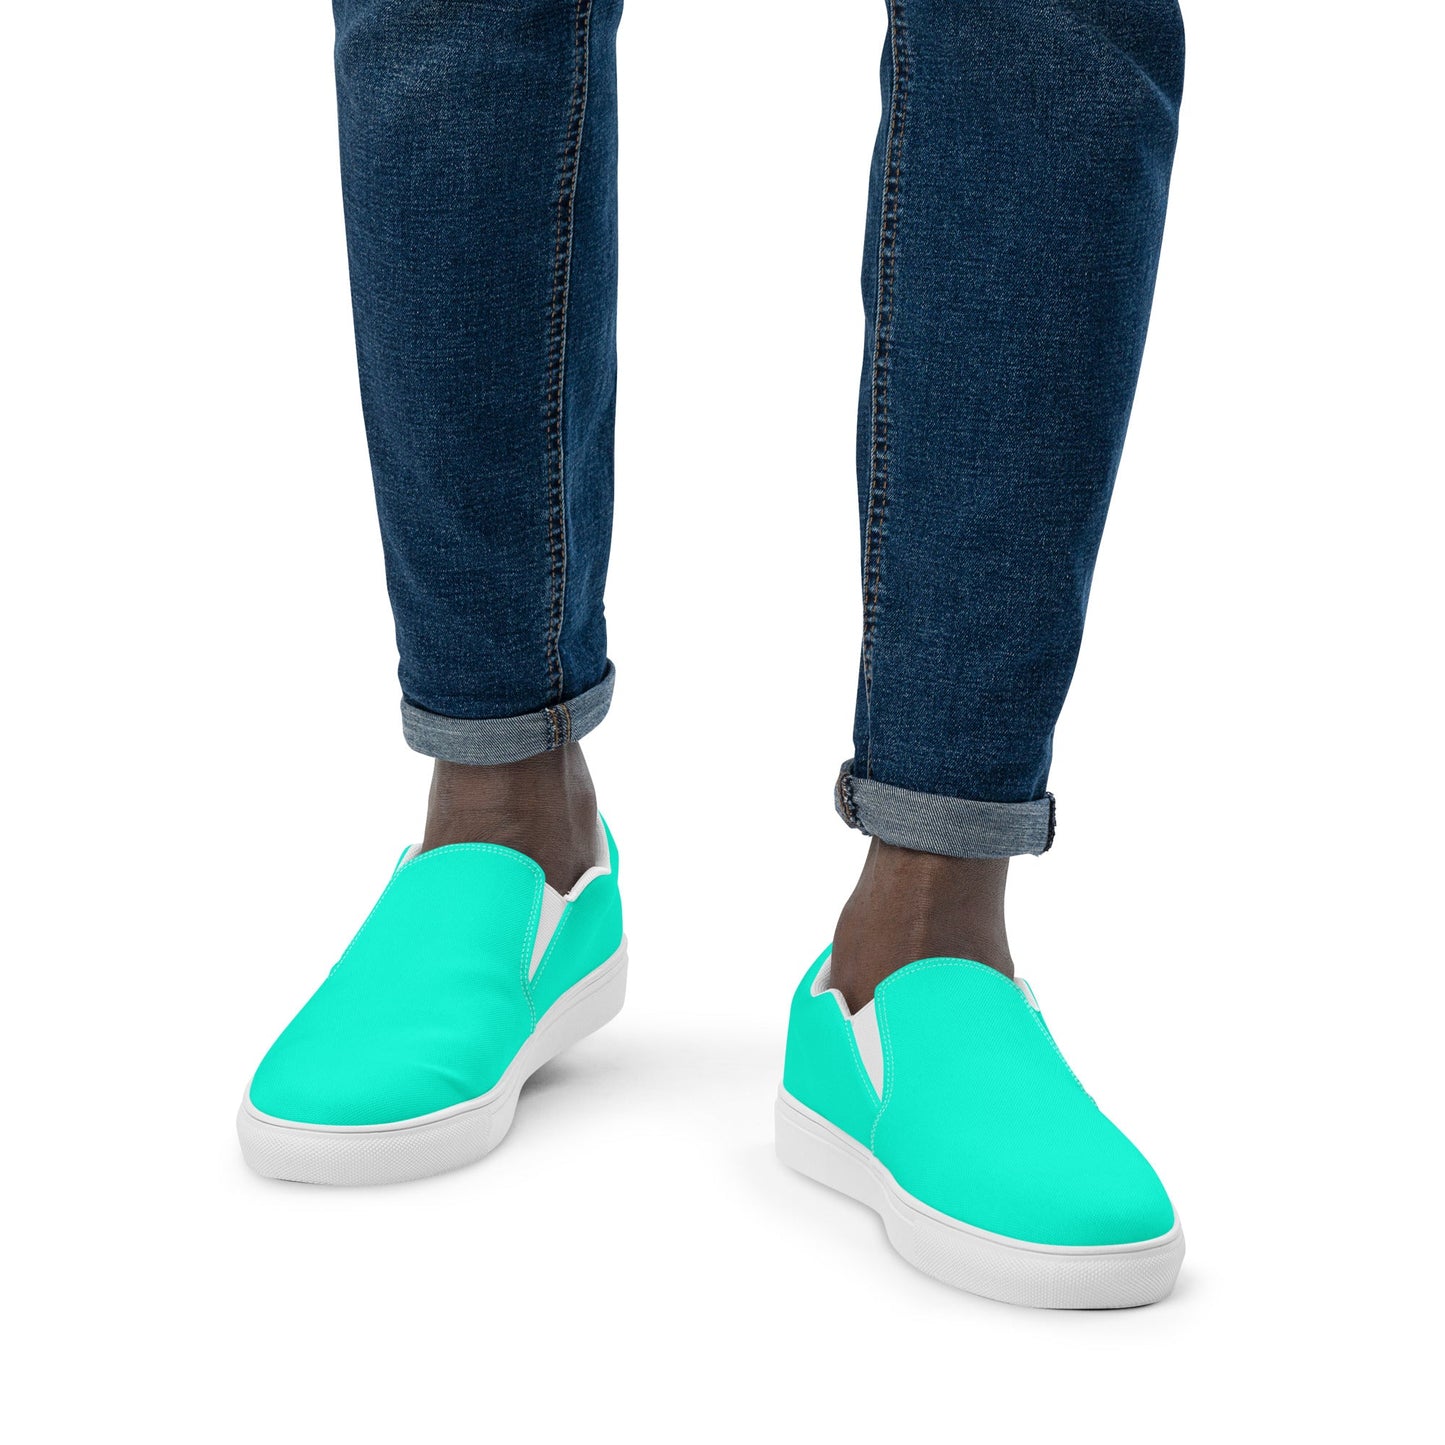 klasneakers Men’s slip-on canvas shoes - Cool Blue Aqua Green